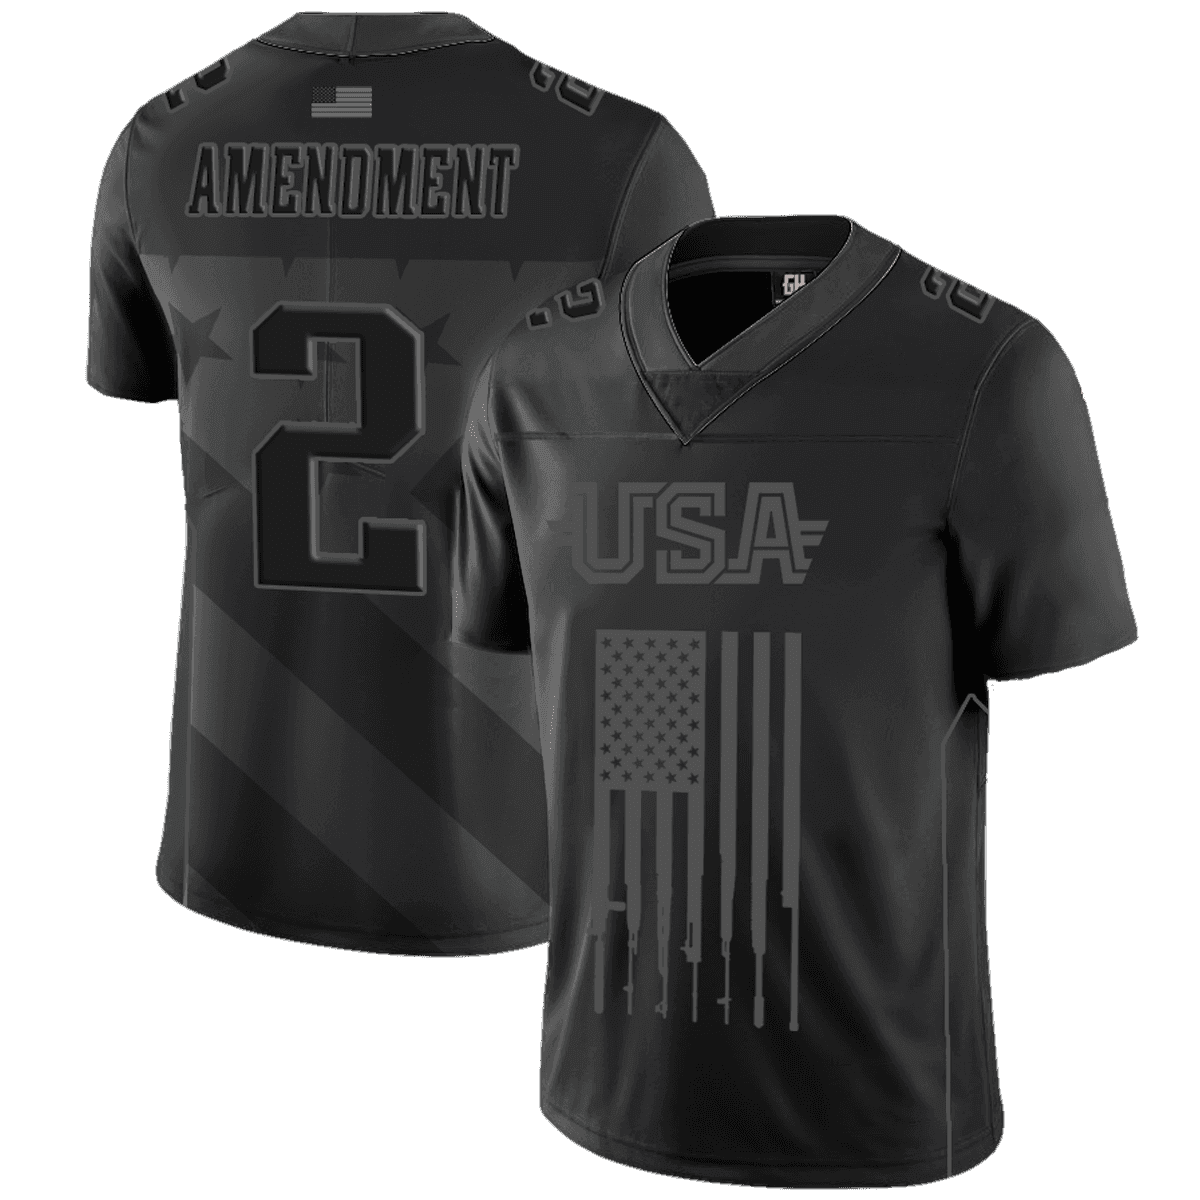 4XL Team USA 2nd Amendment Football Jersey Blackout Edition